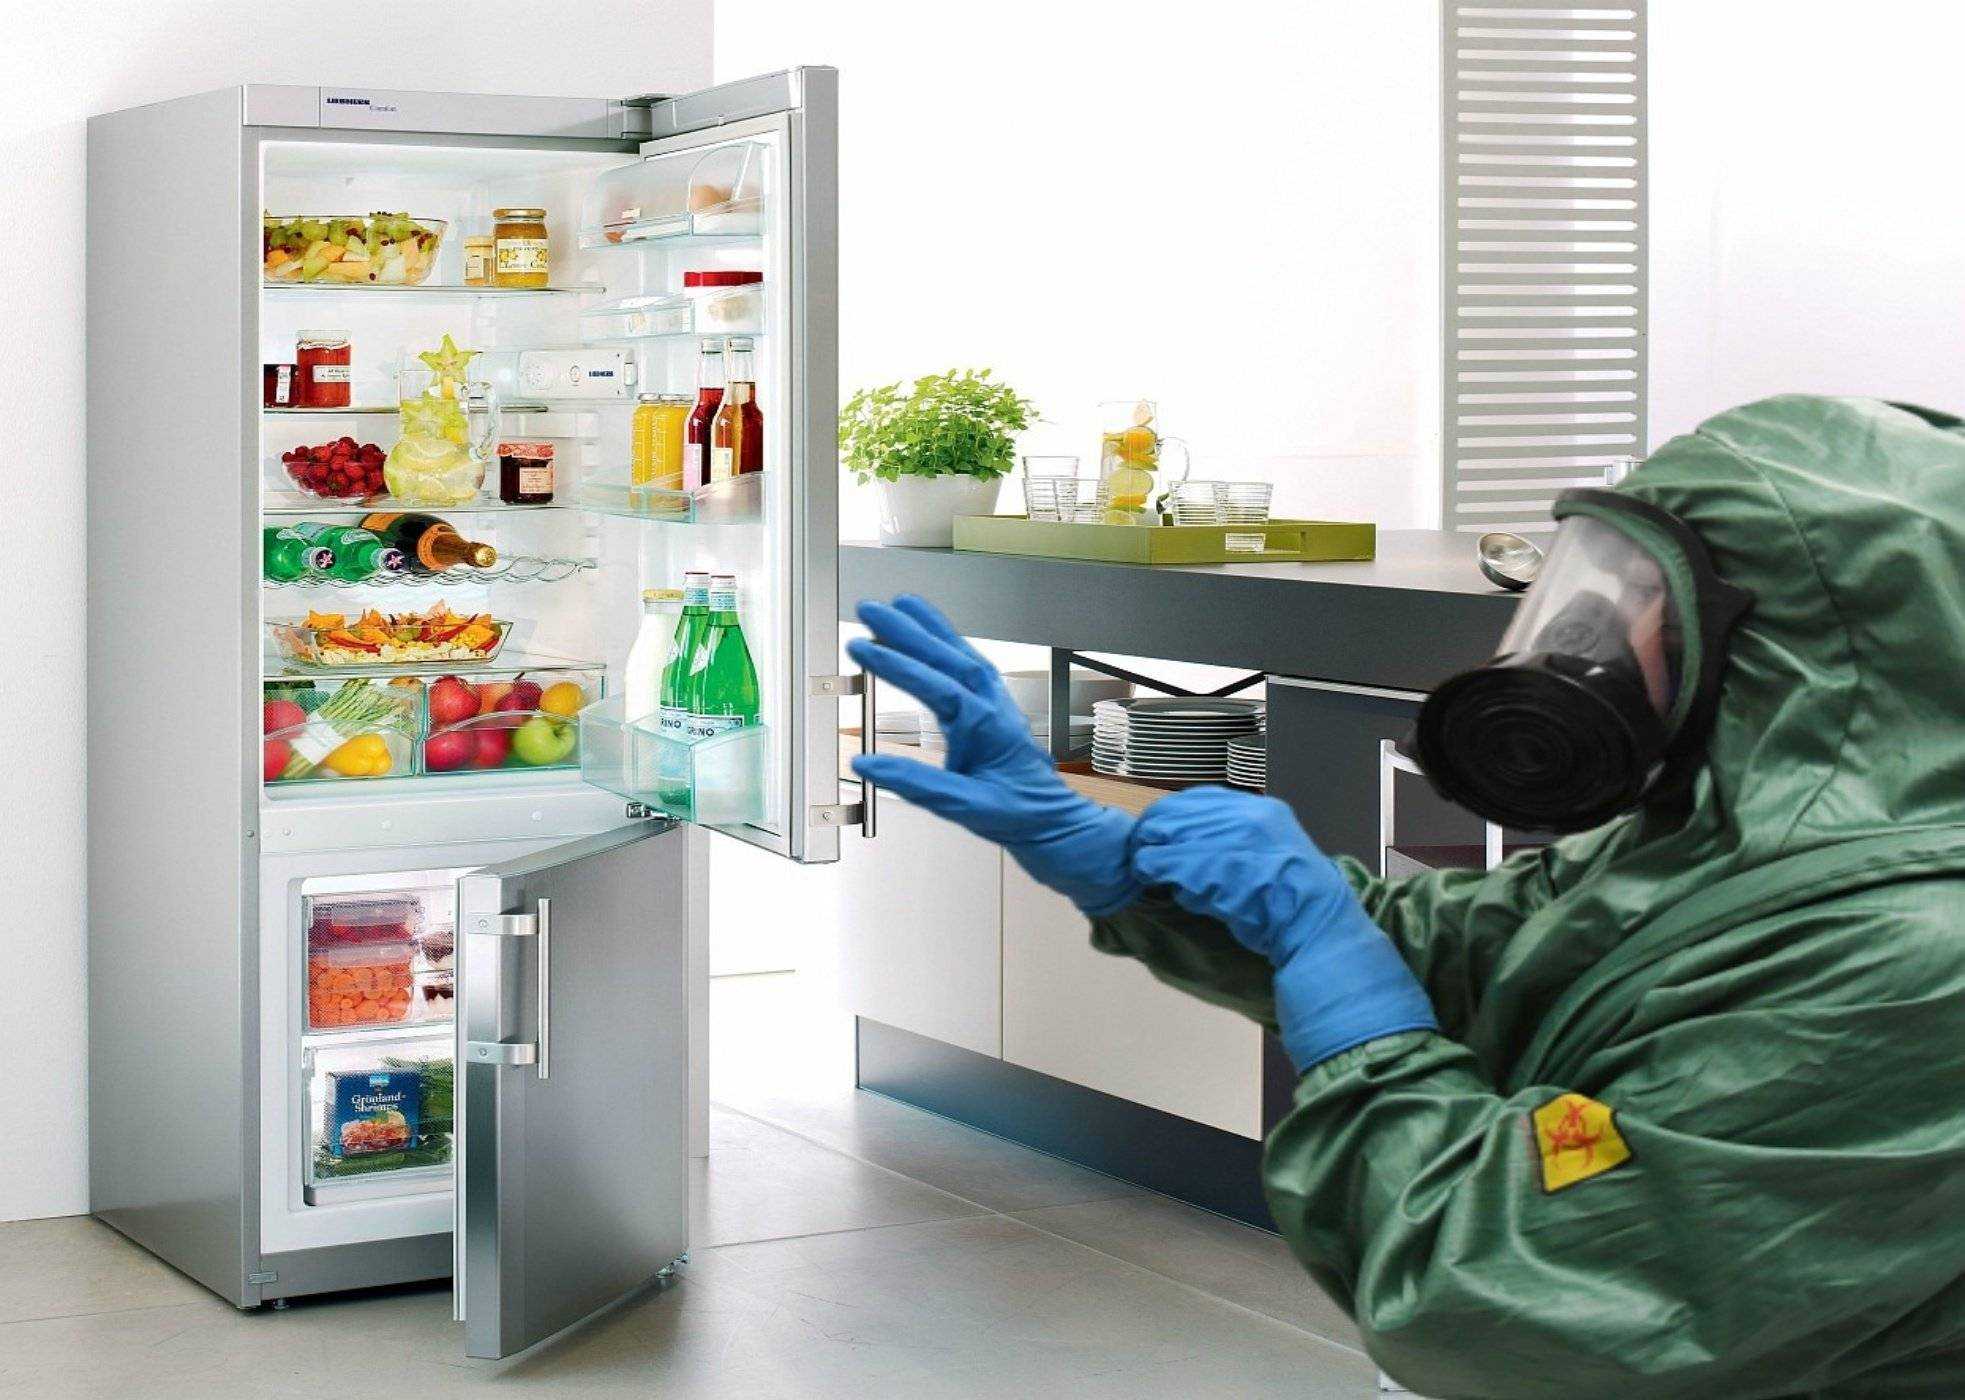 Неприятный запах в холодильнике как избавиться. Мытье холодильника. Плесень в холодильнике. Тухлые продукты в холодильнике. Бактерии в холодильнике.